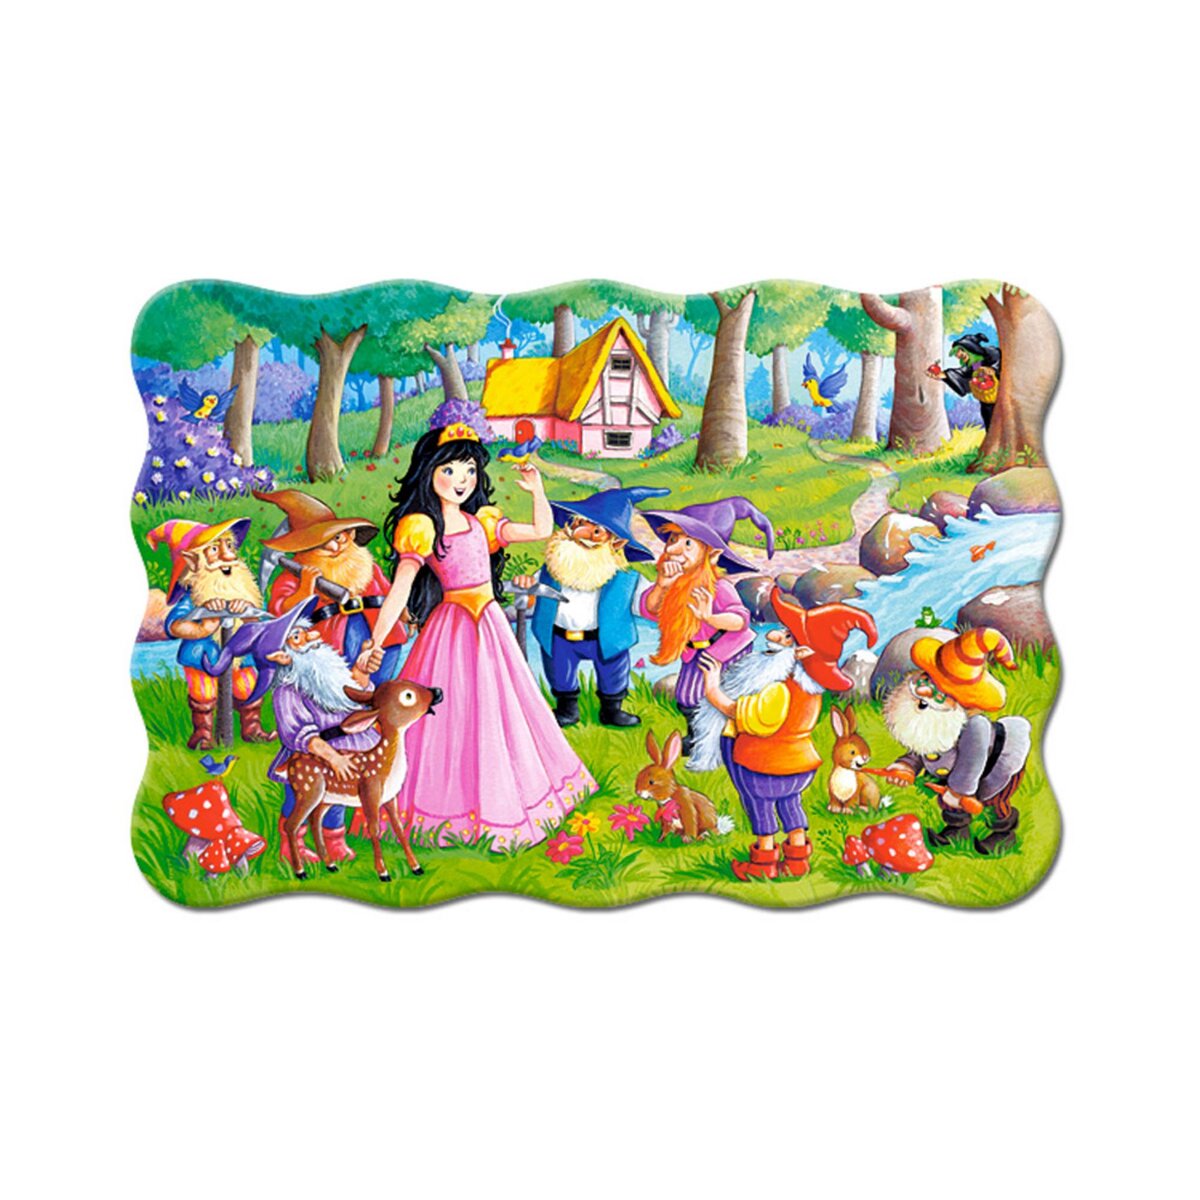 Castorland Puzzle 20 pièces : Blanche-Neige et les sept nains